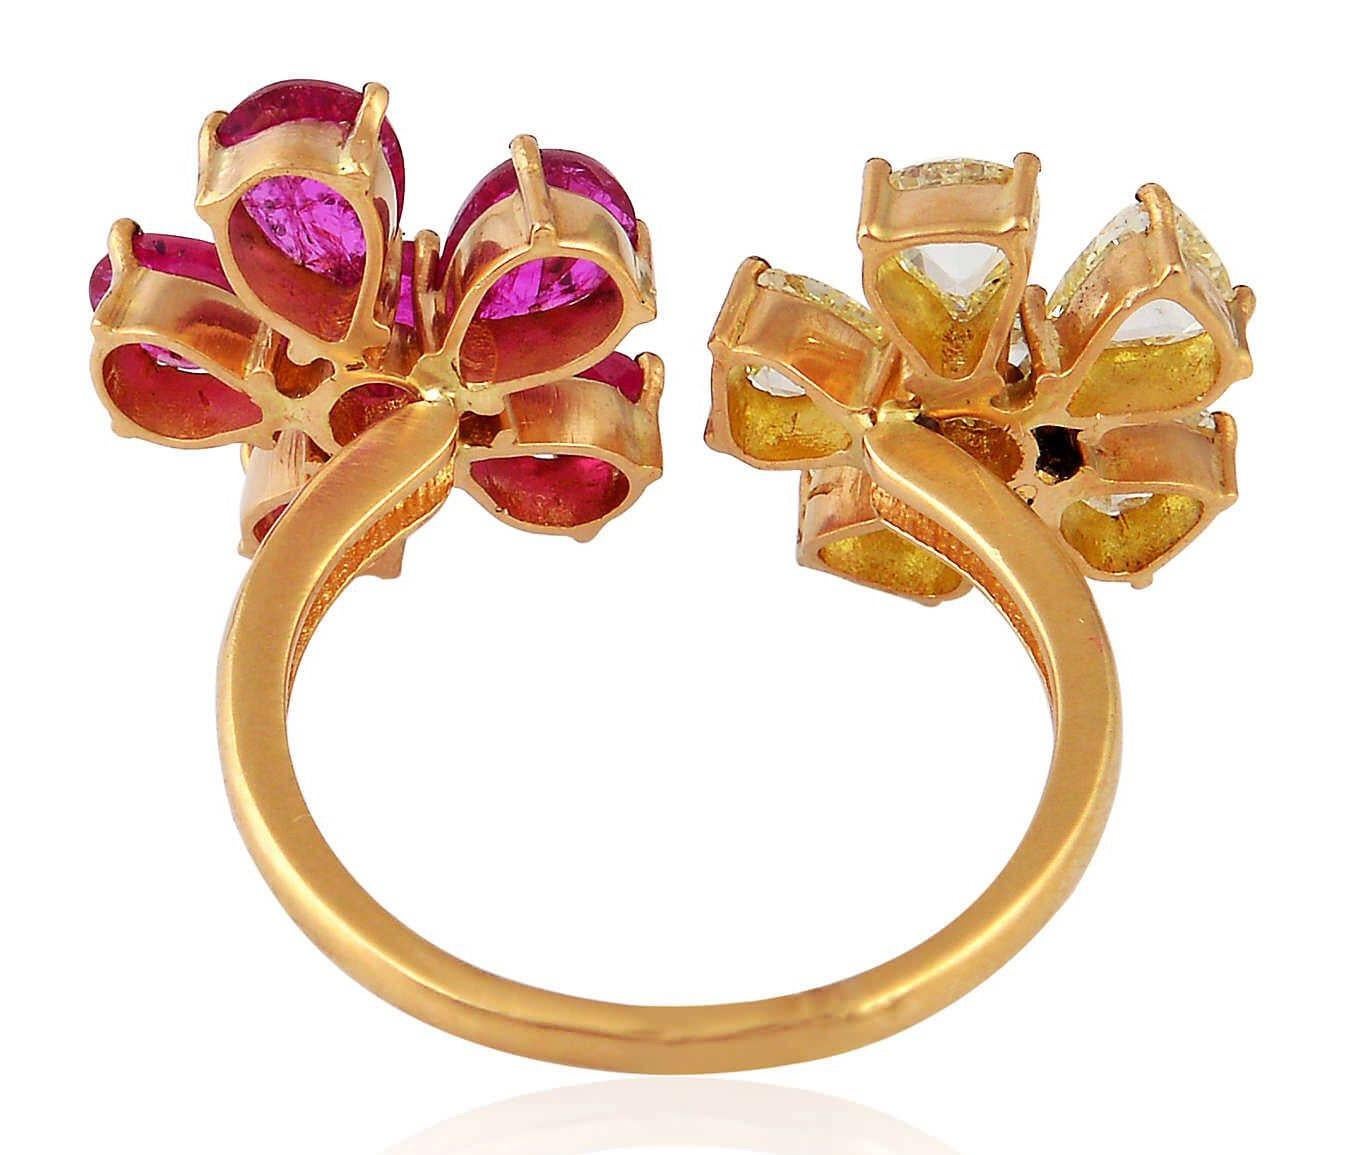 Dieser florale Rubinring wurde aus 18-karätigem Gold gefertigt.  Er ist von Hand mit 2,42 Karat Rubinen und 1,22 Karat Diamanten besetzt. 

Der Ring hat die Größe 6,5 und kann auf Anfrage größer oder kleiner gemacht werden. 
FOLGEN  MEGHNA JEWELS